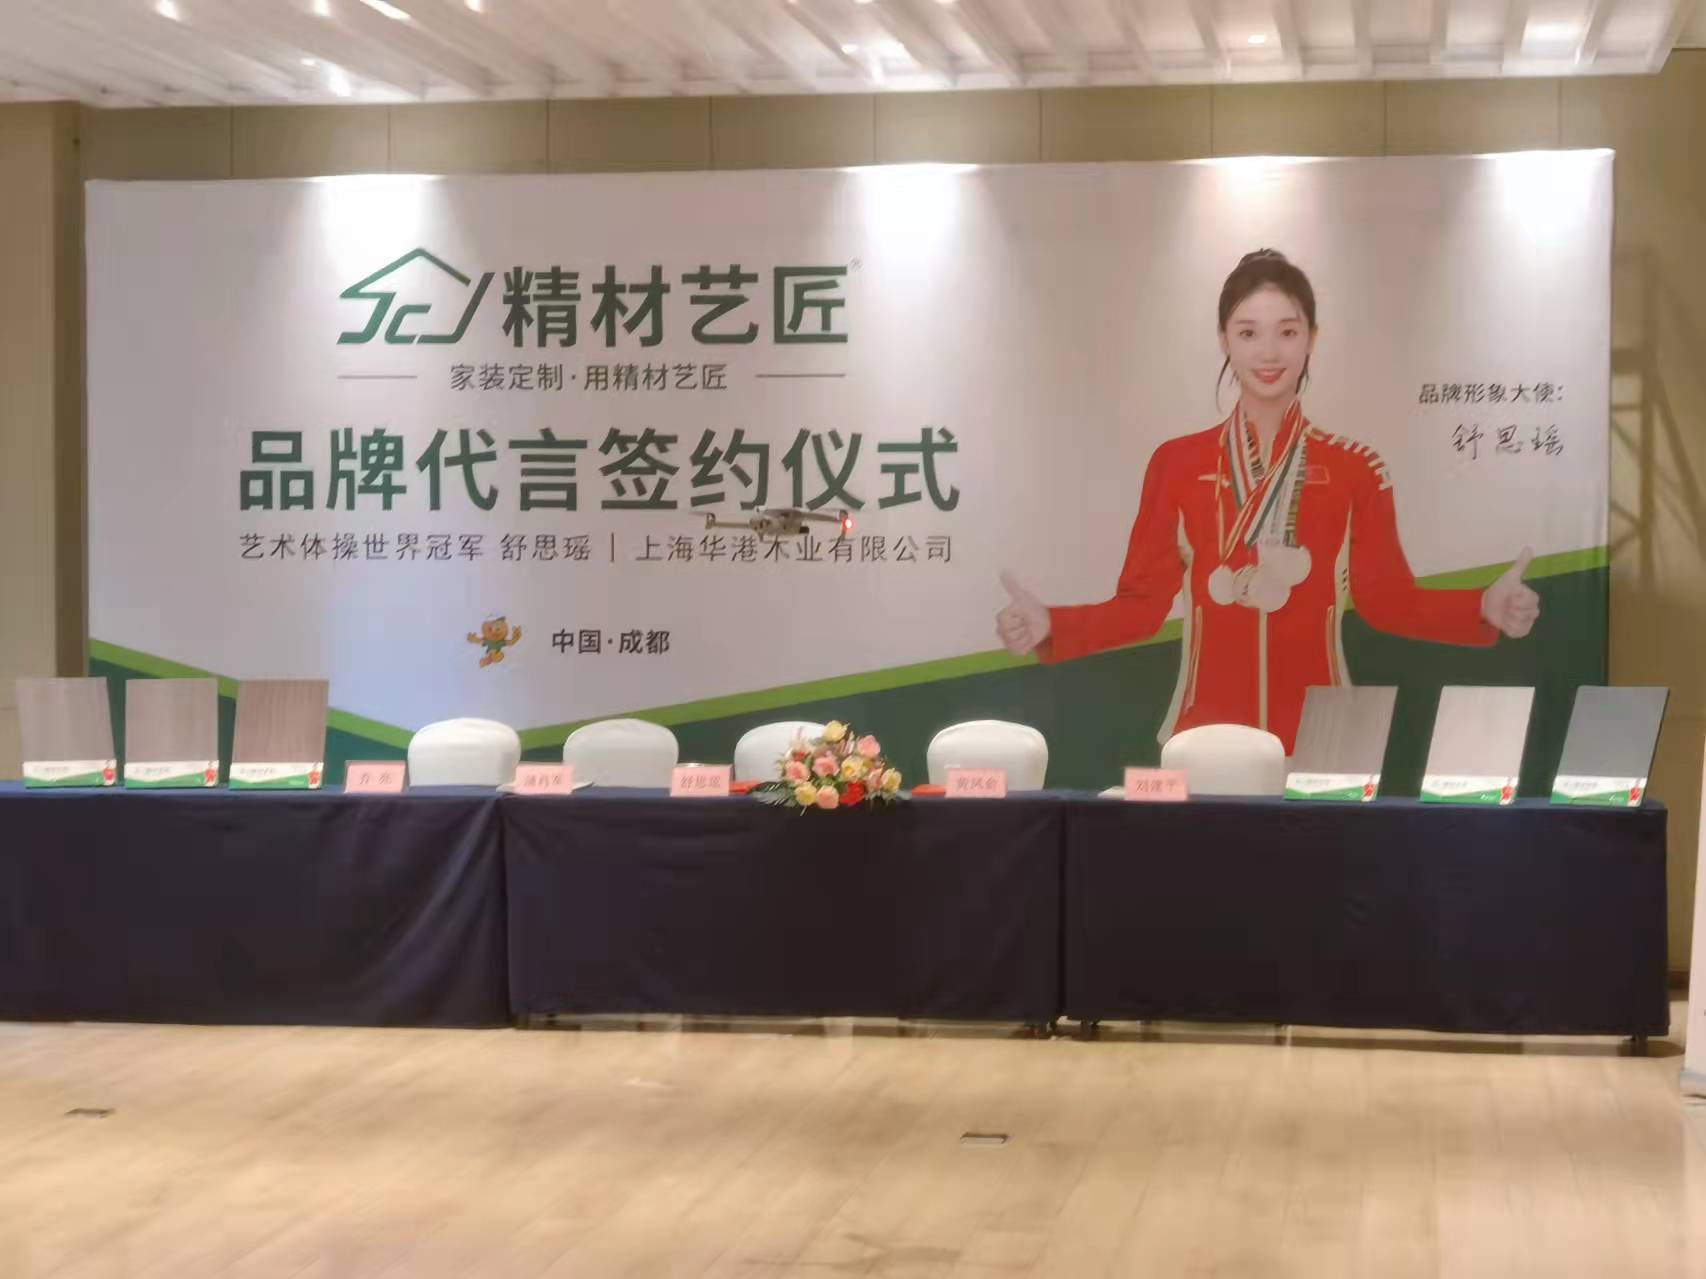 祝賀中國板材品牌精材藝匠簽約藝術體操冠軍舒思瑤